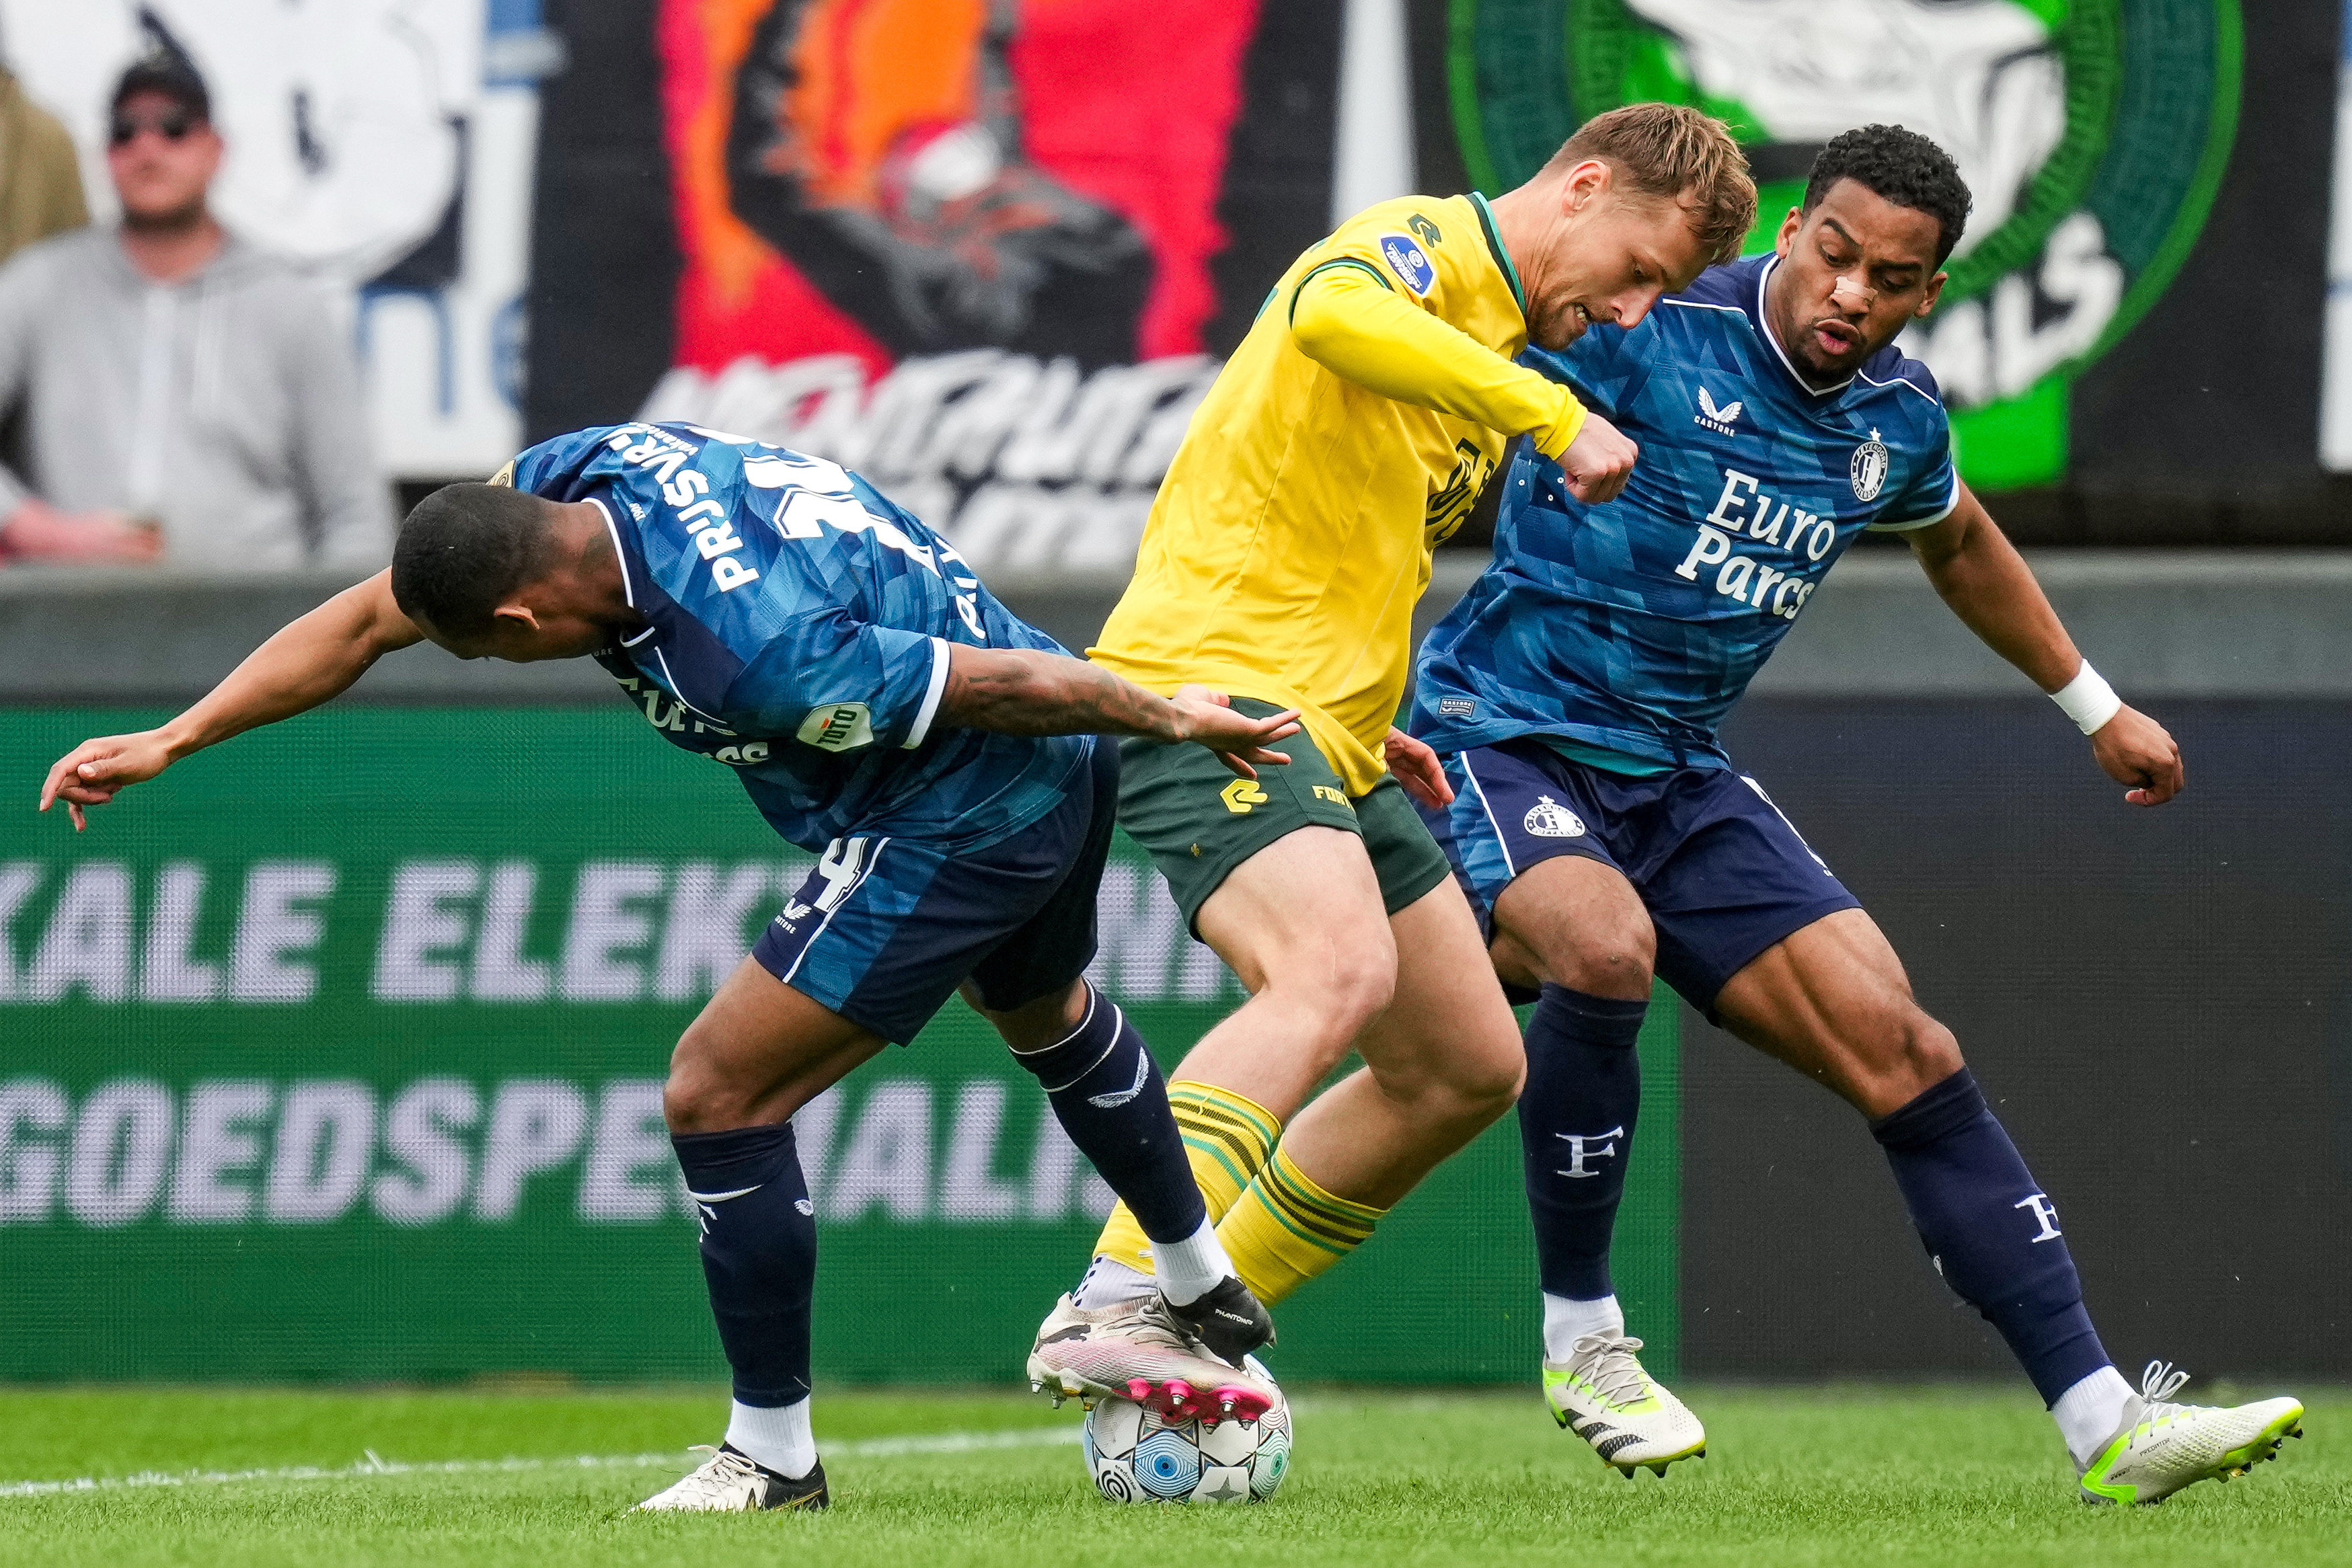 Liveblog • Fortuna Sittard - Feyenoord • 0-1 [FT]